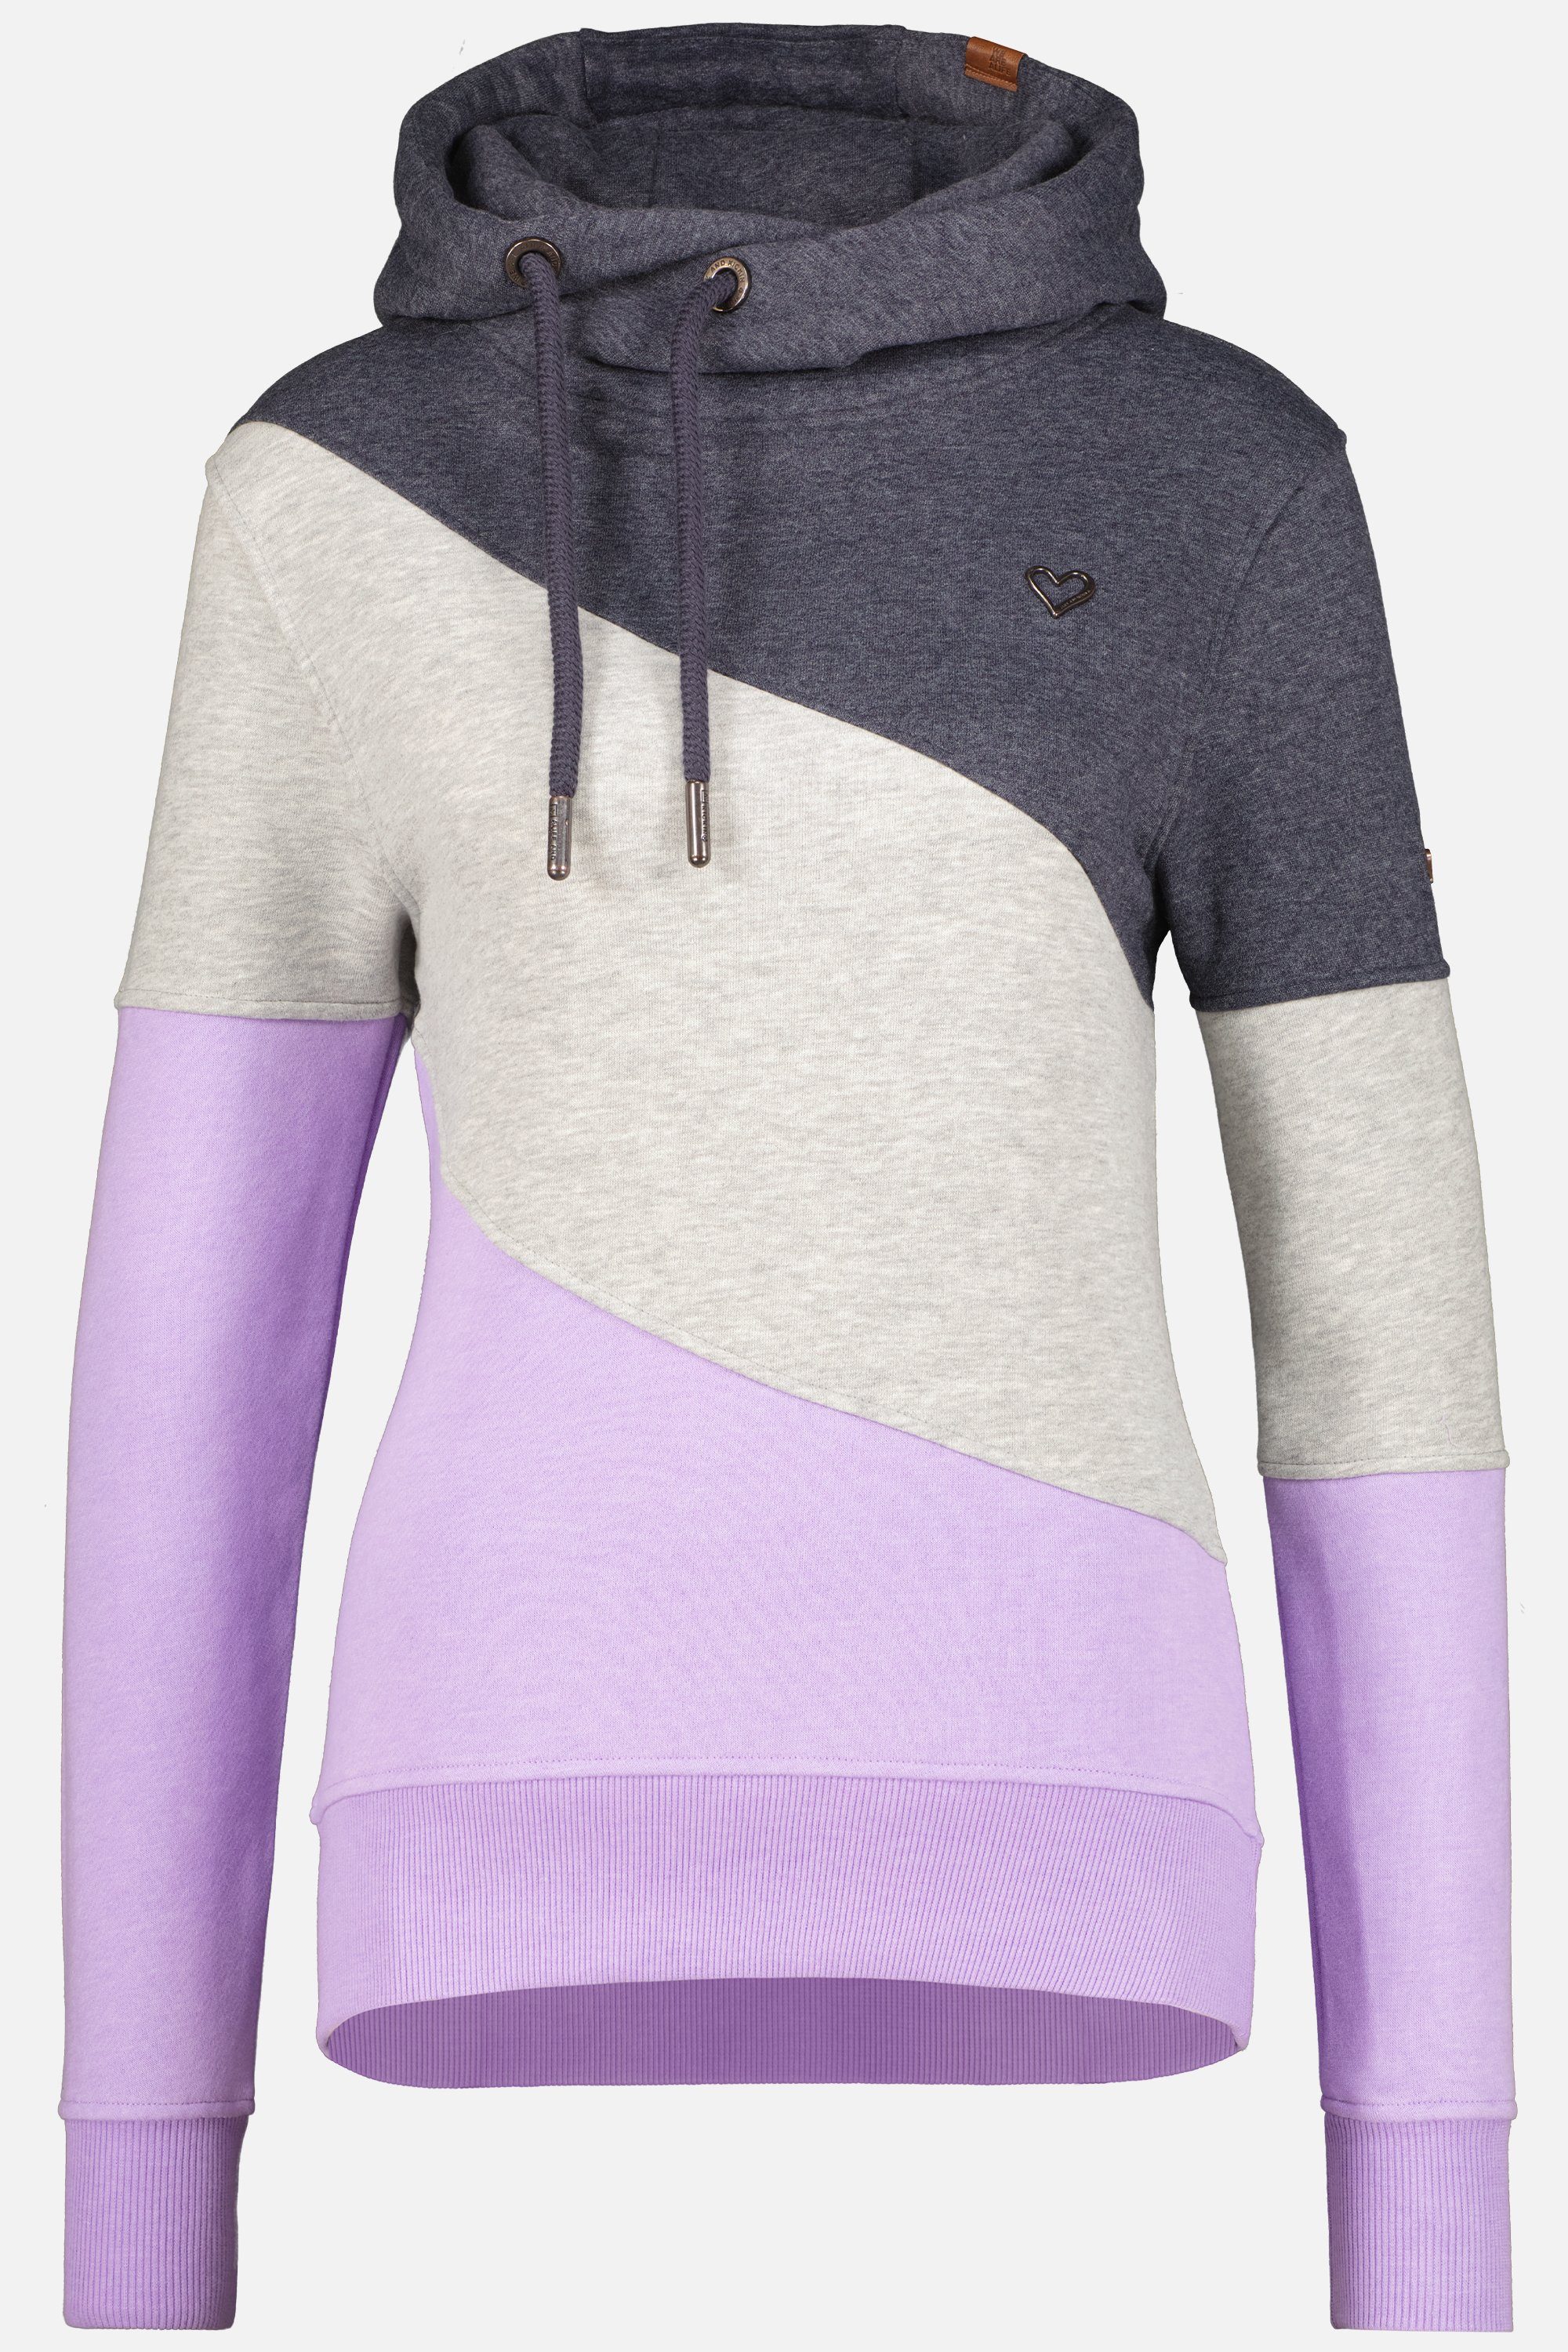 Alife & Kickin Kapuzensweatshirt StacyAK A Hoodie Sweatshirt Damen Kapuzensweatshirt, Pullover digital lavender melange | Sweatshirts